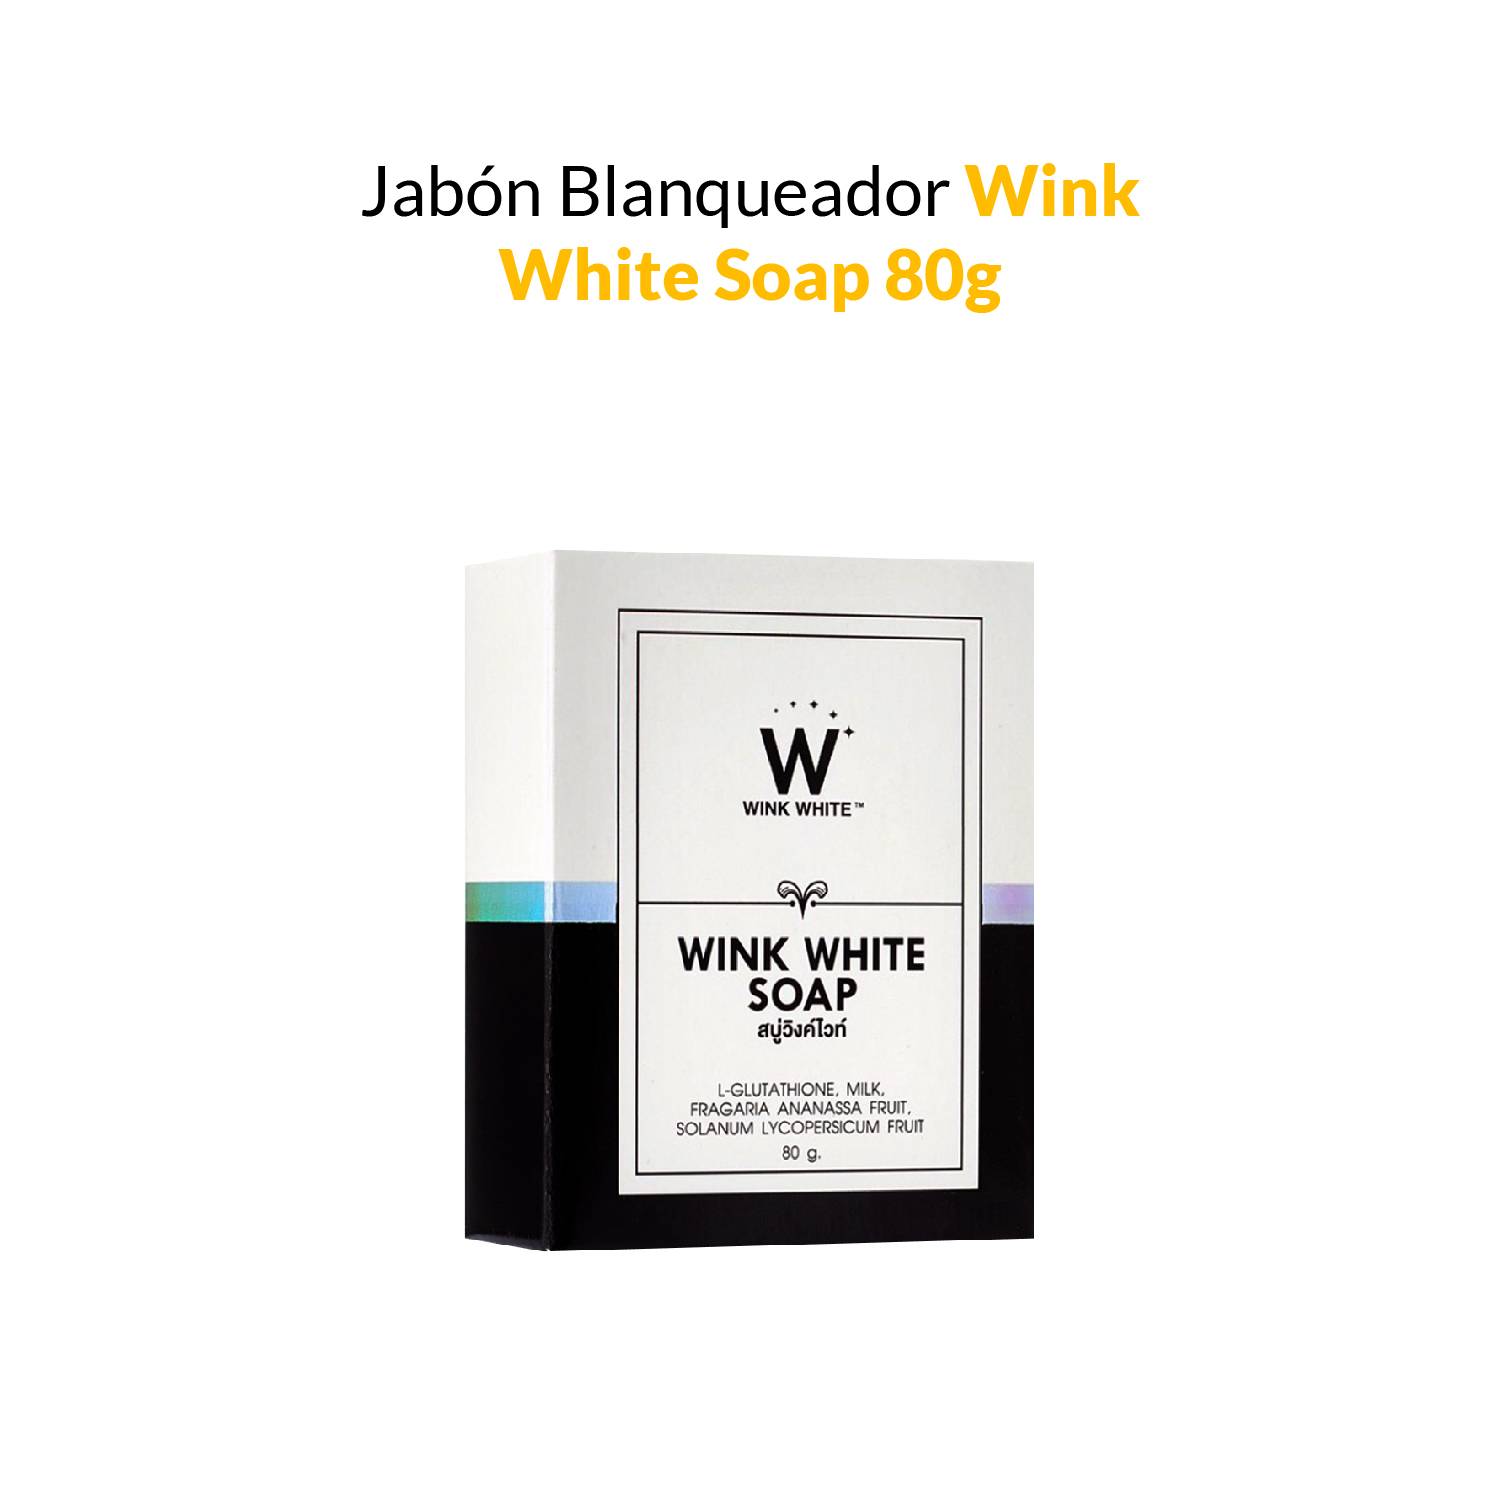 disfraz kiwi Acorazado Jabón Blanqueador Wink White Soap. GENERICO | falabella.com